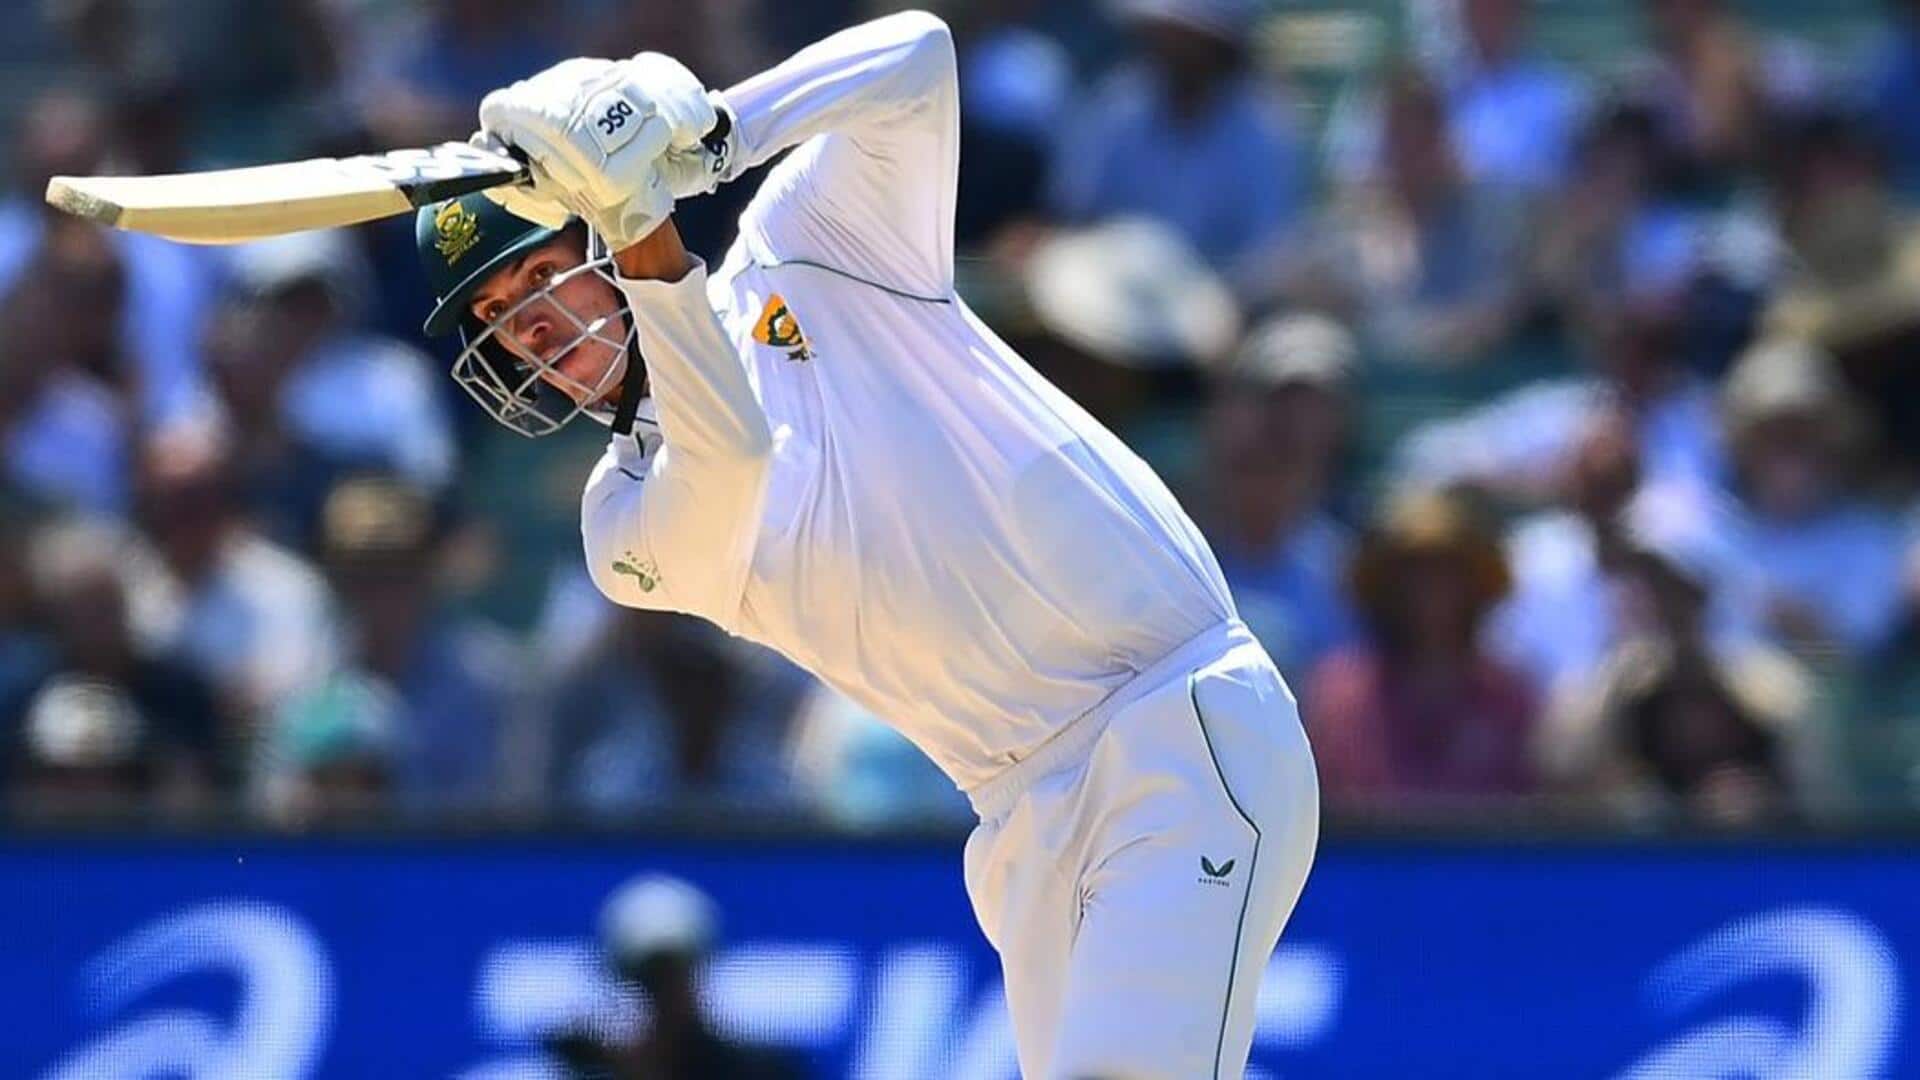 दक्षिण अफ्रीका बनाम भारत: मार्को येन्सन ने बनाया अपने टेस्ट करियर का सर्वोच्च स्कोर, जानिए आंकड़े